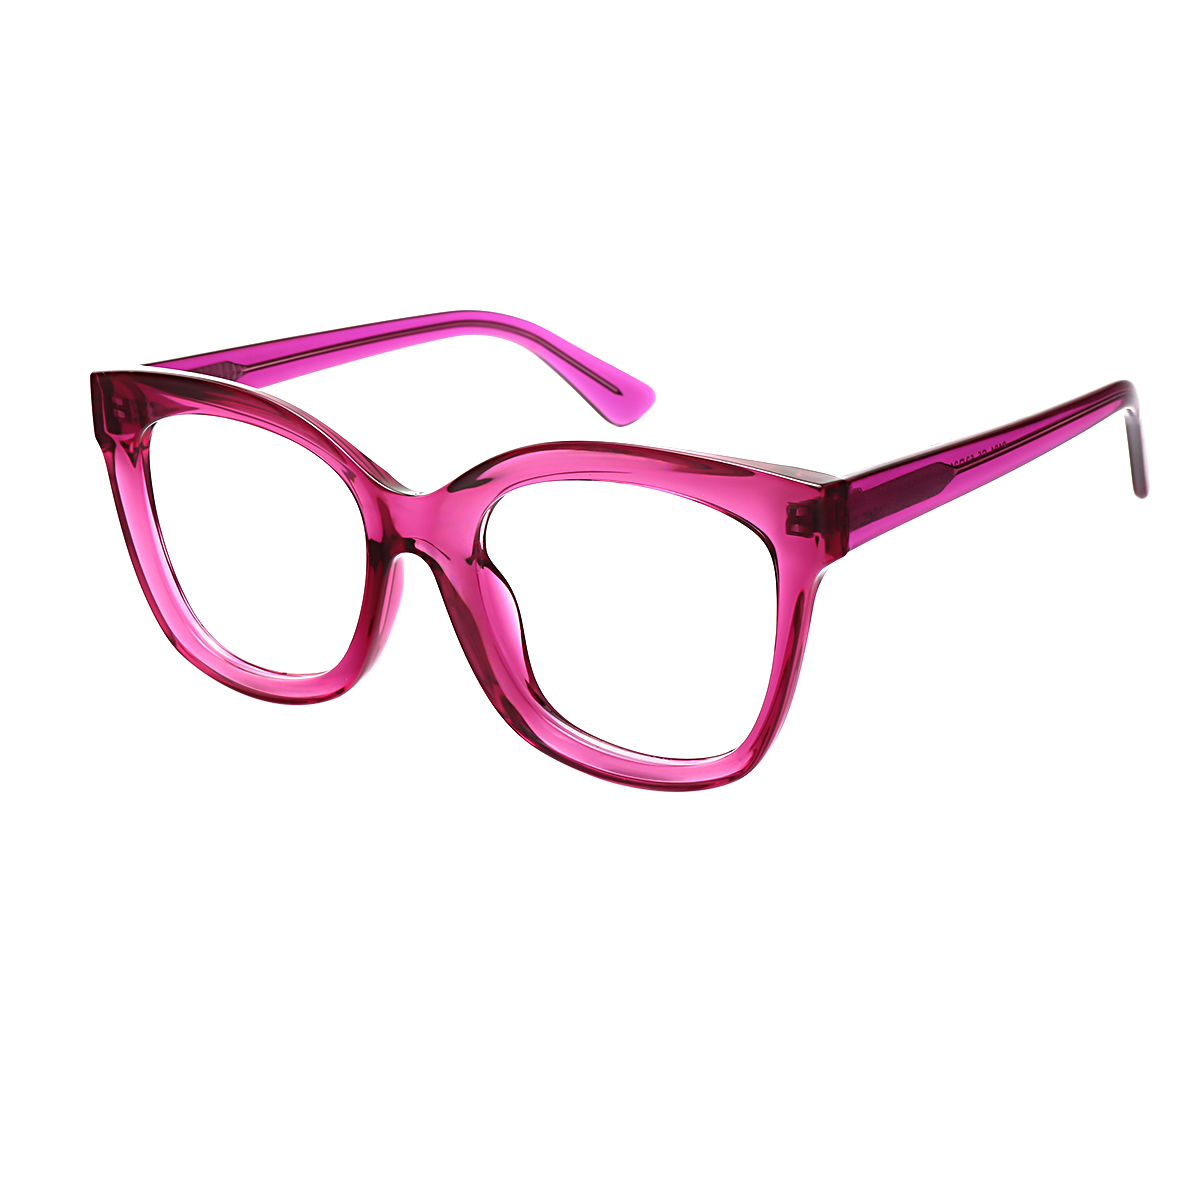 Linda - Cat-eye Fuchsia Reading Glasses for Women